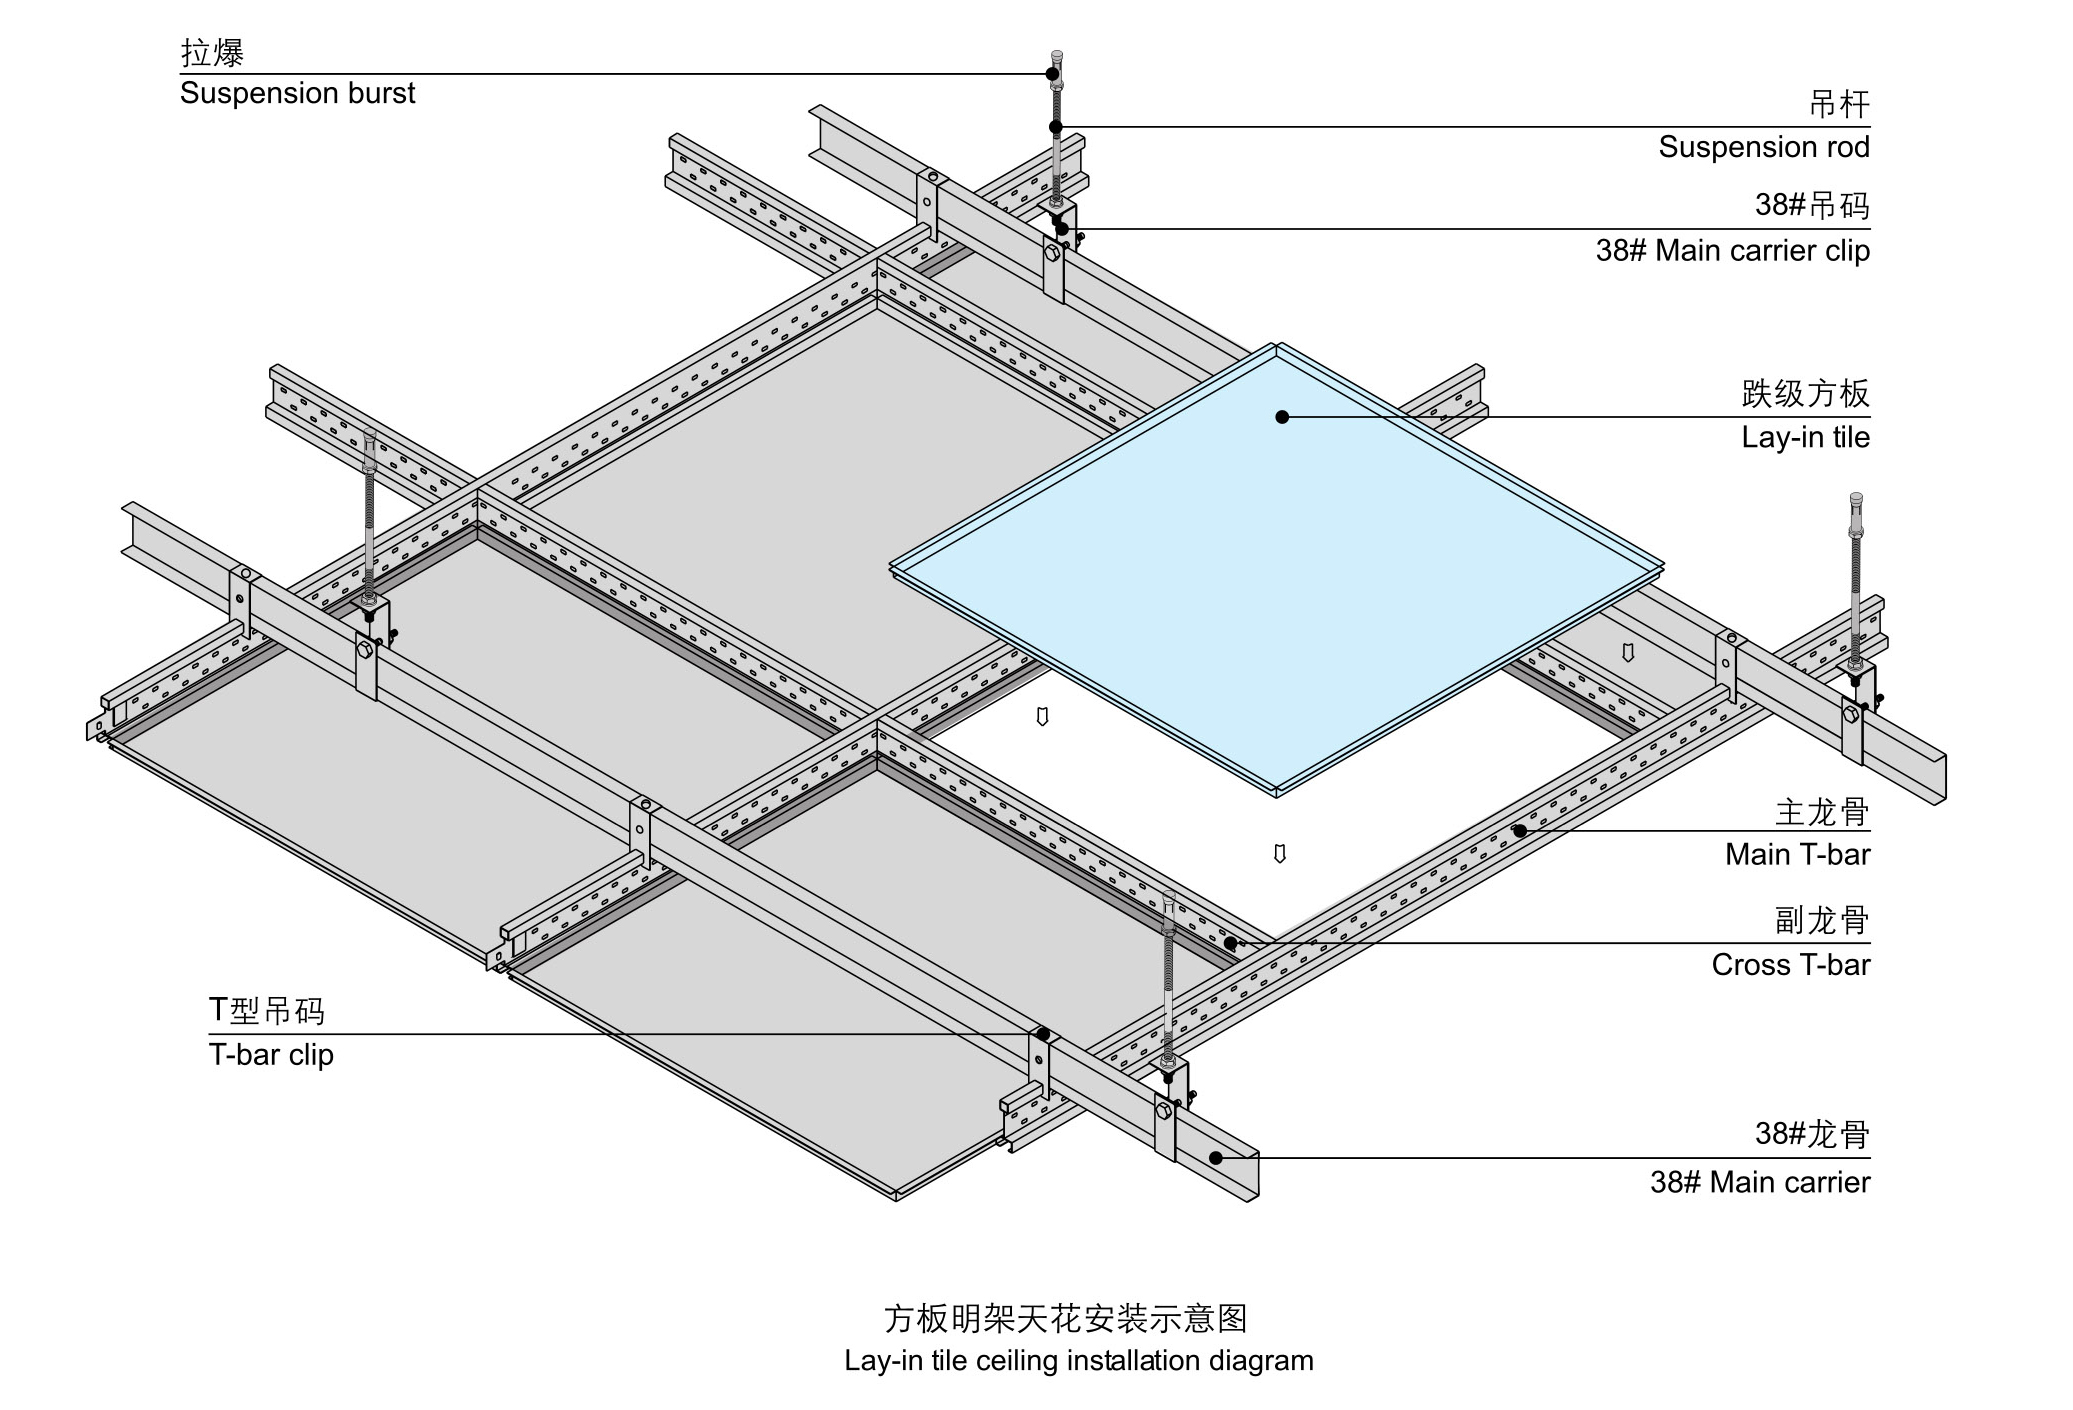 甲级写字楼大堂铝扣板,勾搭板吊顶工程如何安装施工?